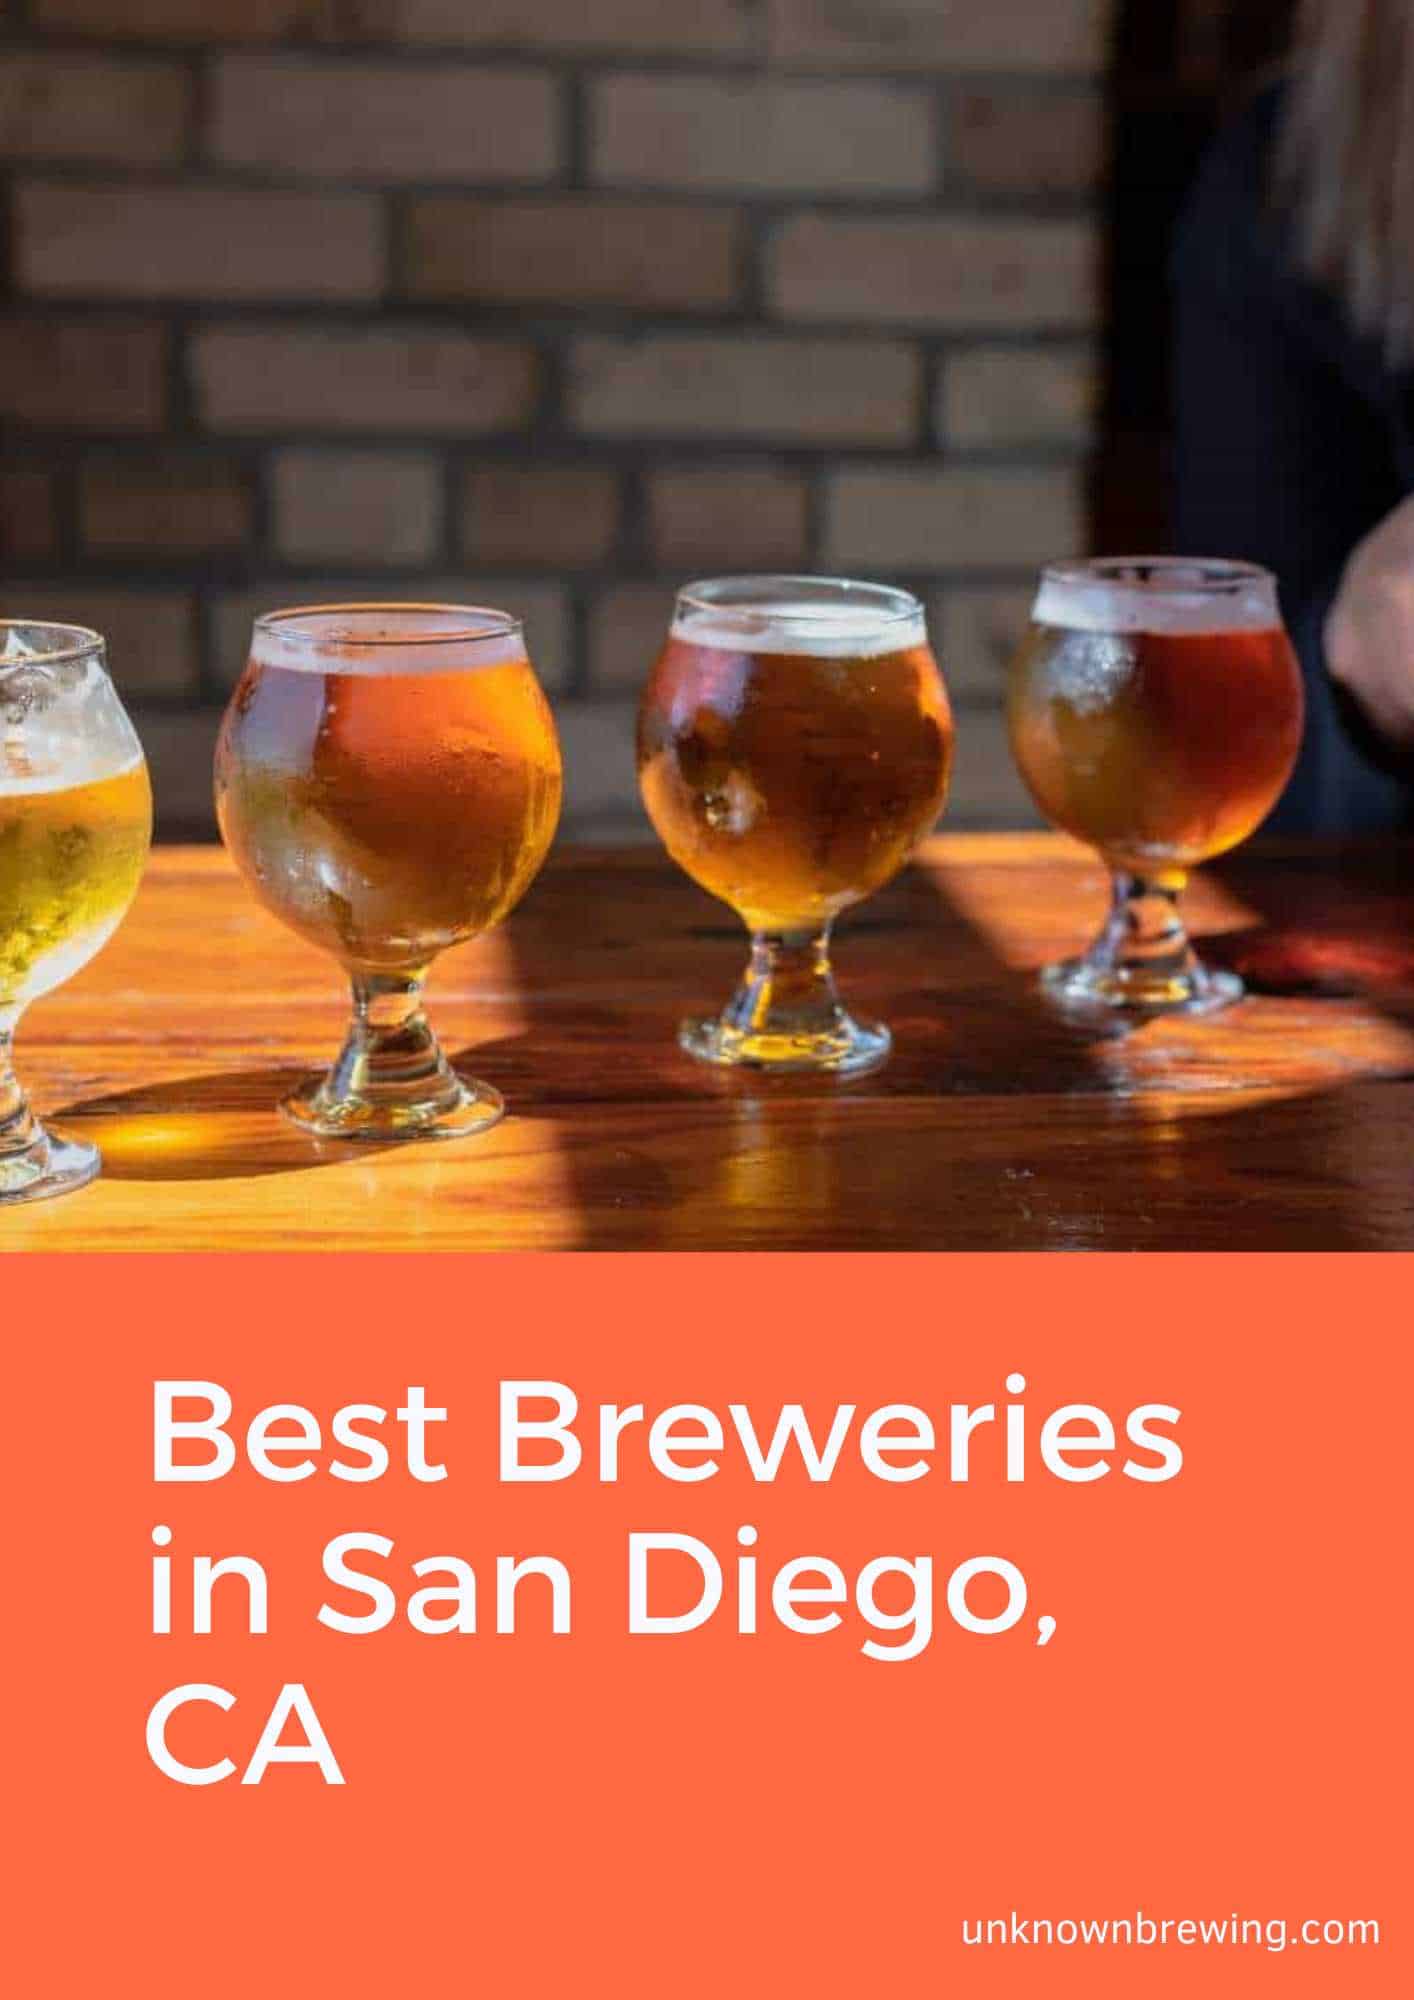 Best Breweries in San Diego, CA